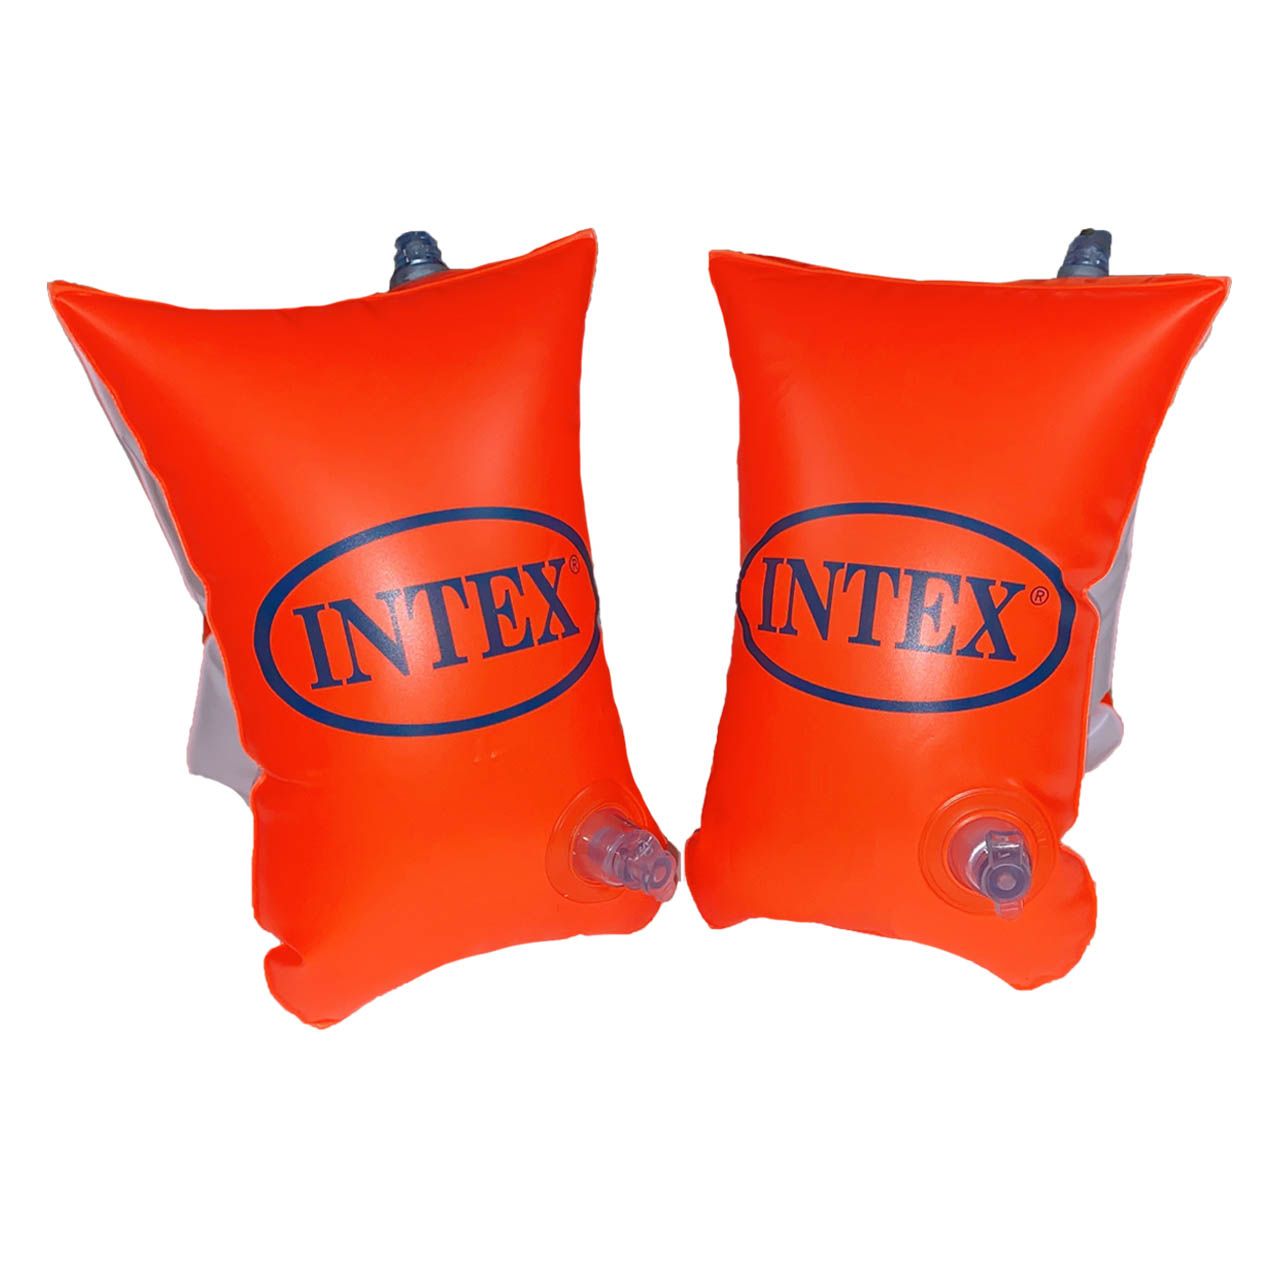 بازوبند شنا بادی اینتکس  مدل INTEX6-12 بسته 2 عددی -  - 3